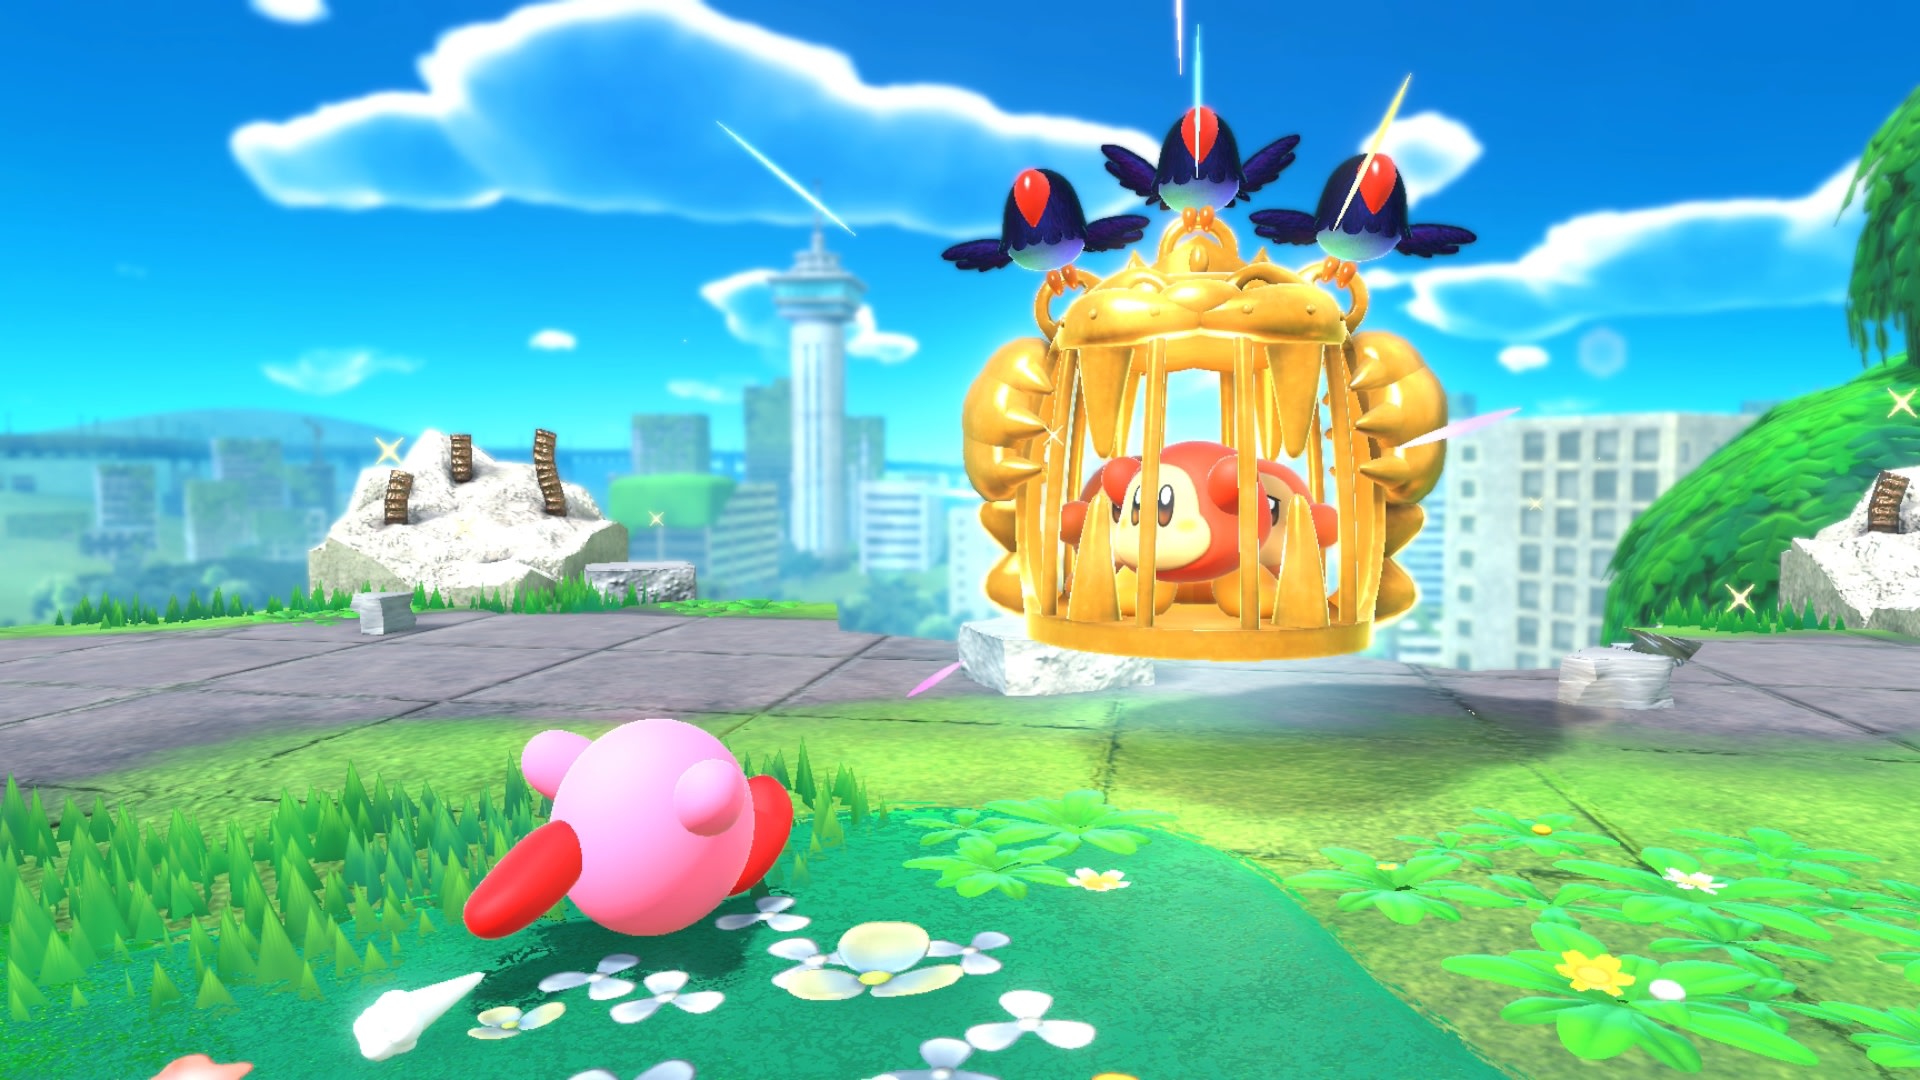 Xem hình ảnh Kirby and the Forgotten Land HD Wallpaper sẽ khiến bạn thấy như đang đặt chân đến một thế giới bí ẩn và huyền bí. Những hình ảnh được tạo ra bởi đội ngũ thiết kế sẽ khiến bạn muốn khám phá thêm về trò chơi này.